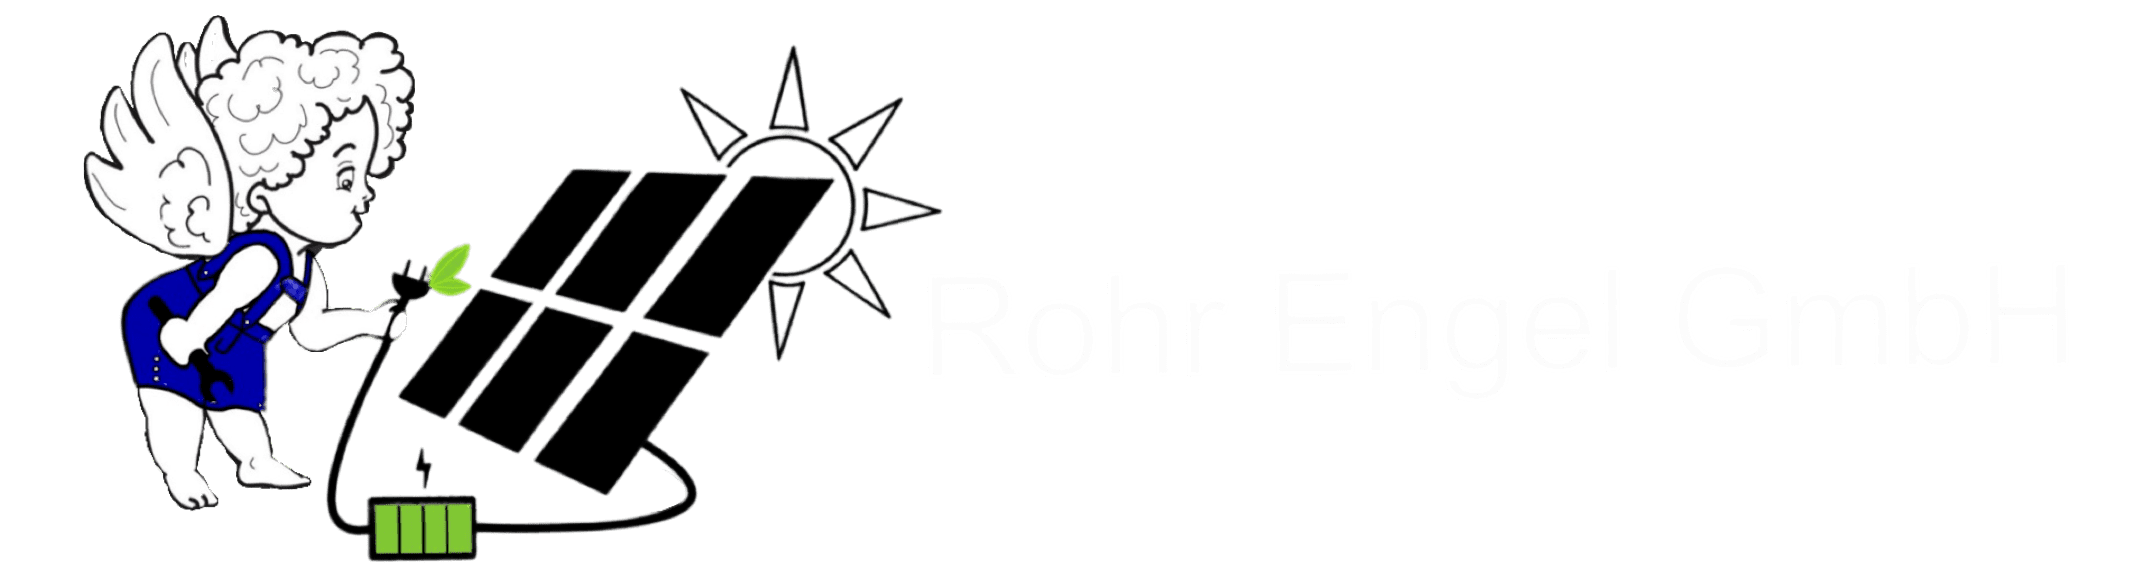 Rohr Engel GmbH